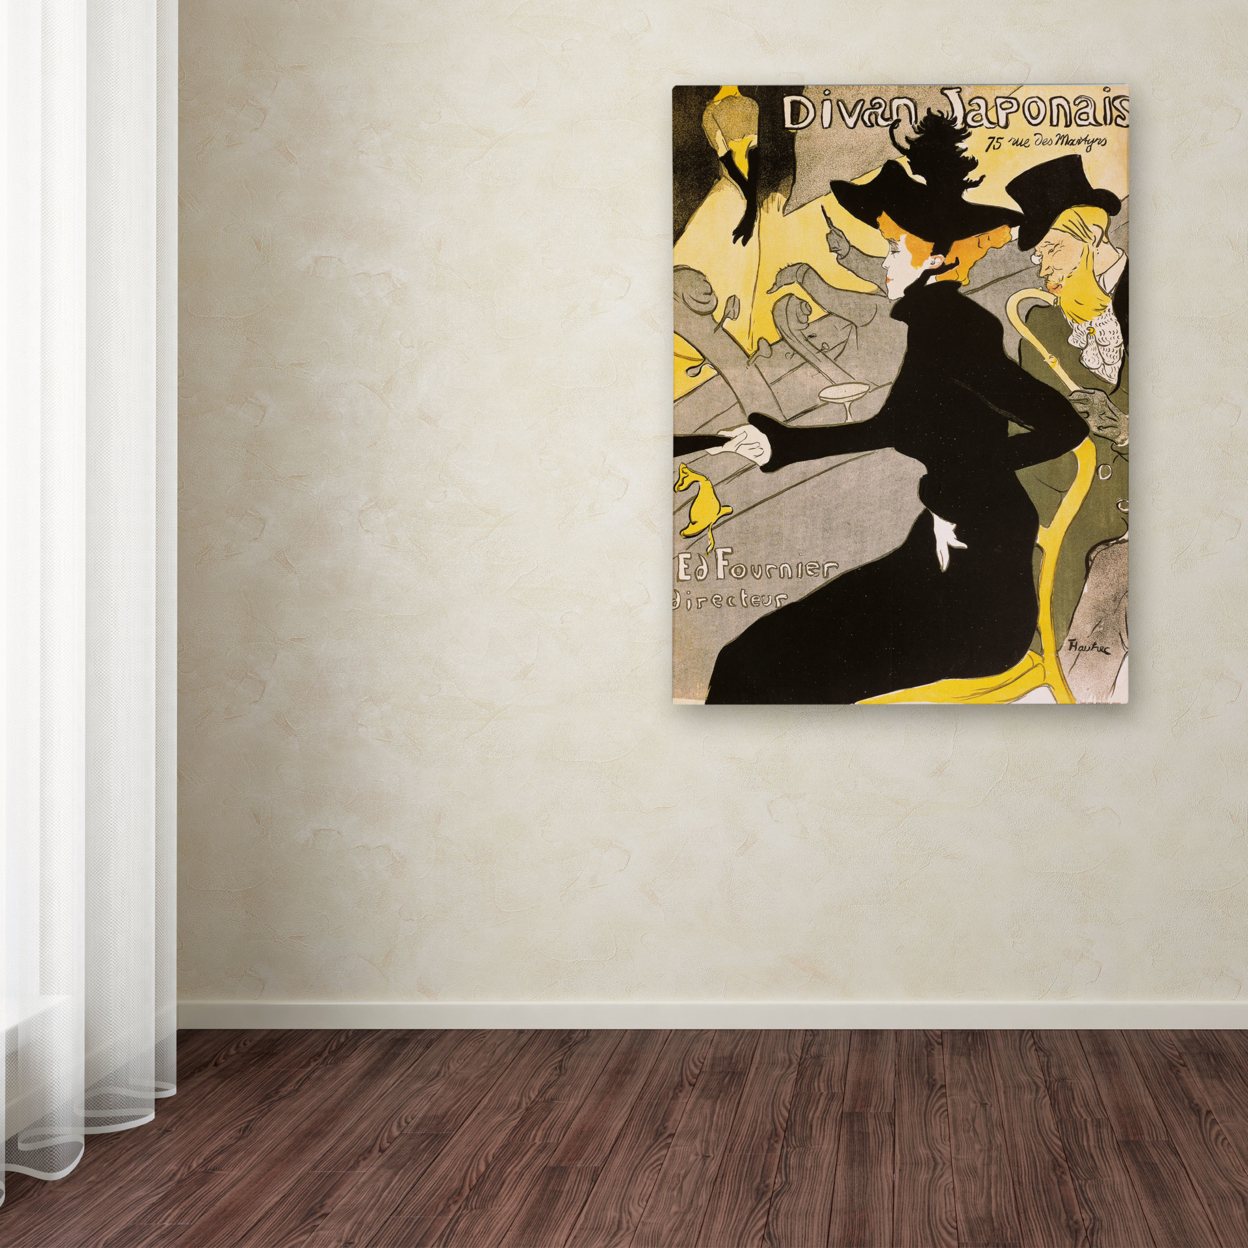 Henri Toulouse-Lautrec 'Divan Japonais' Canvas Wall Art 35 X 47 Inches